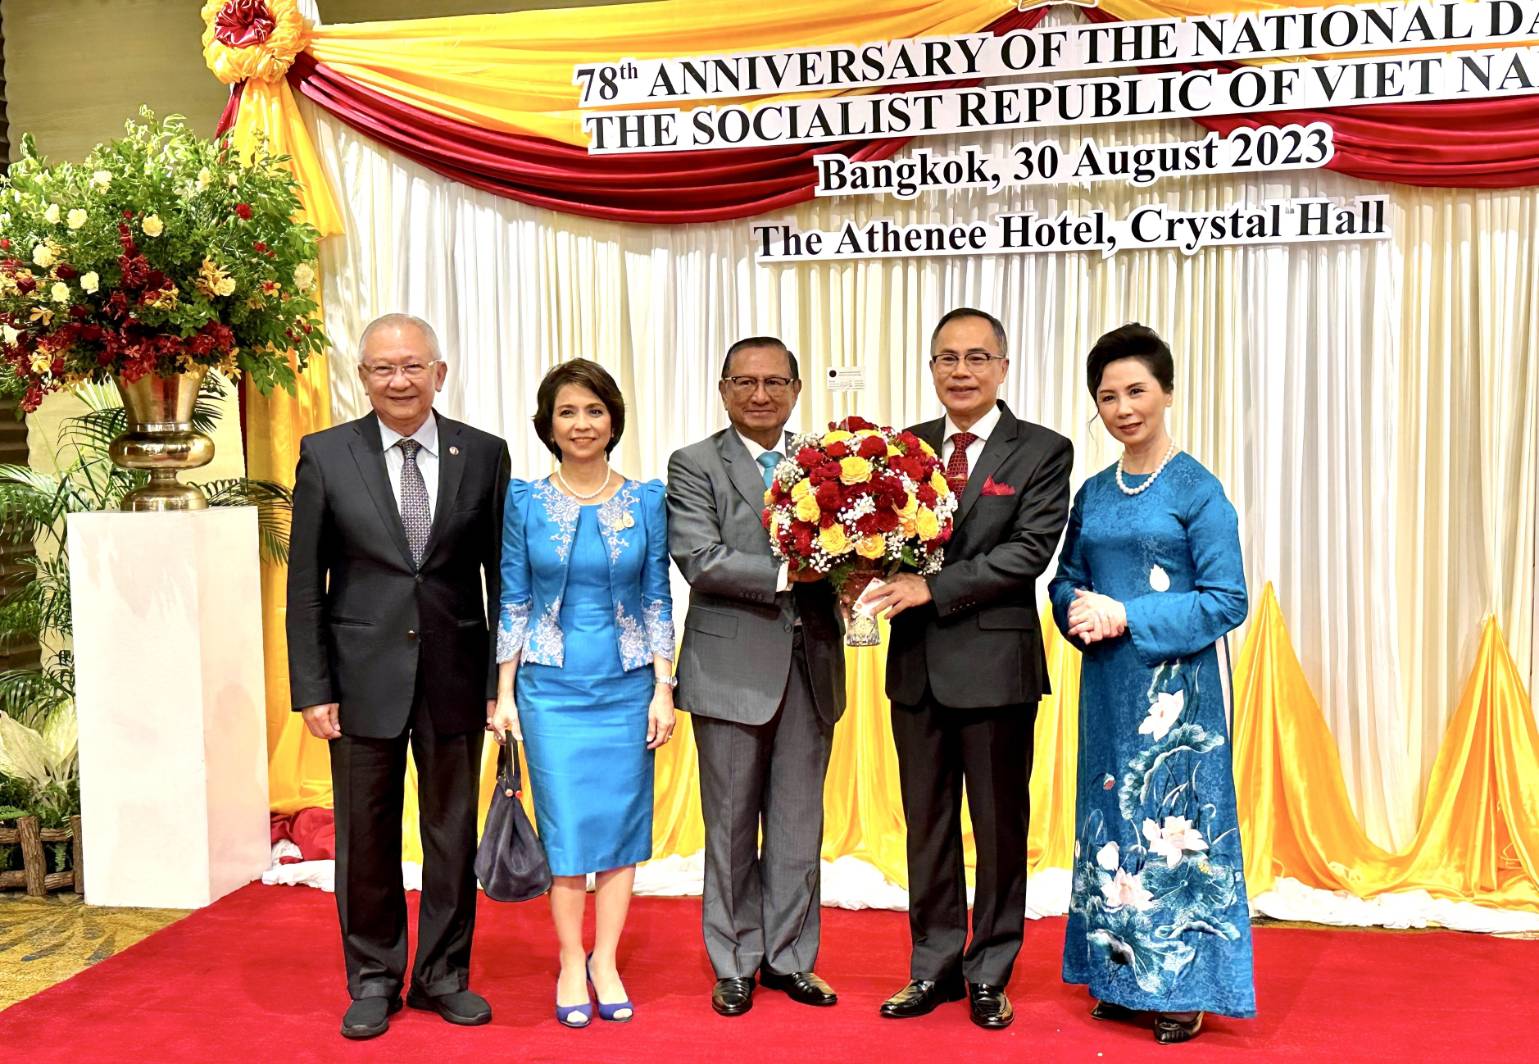 กลุ่มมิตรภาพสมาชิกรัฐสภาไทย-เวียดนาม เข้าร่วมงานเฉลิมฉลองวันชาติสาธารณรัฐสังคมนิยมเวียดนาม